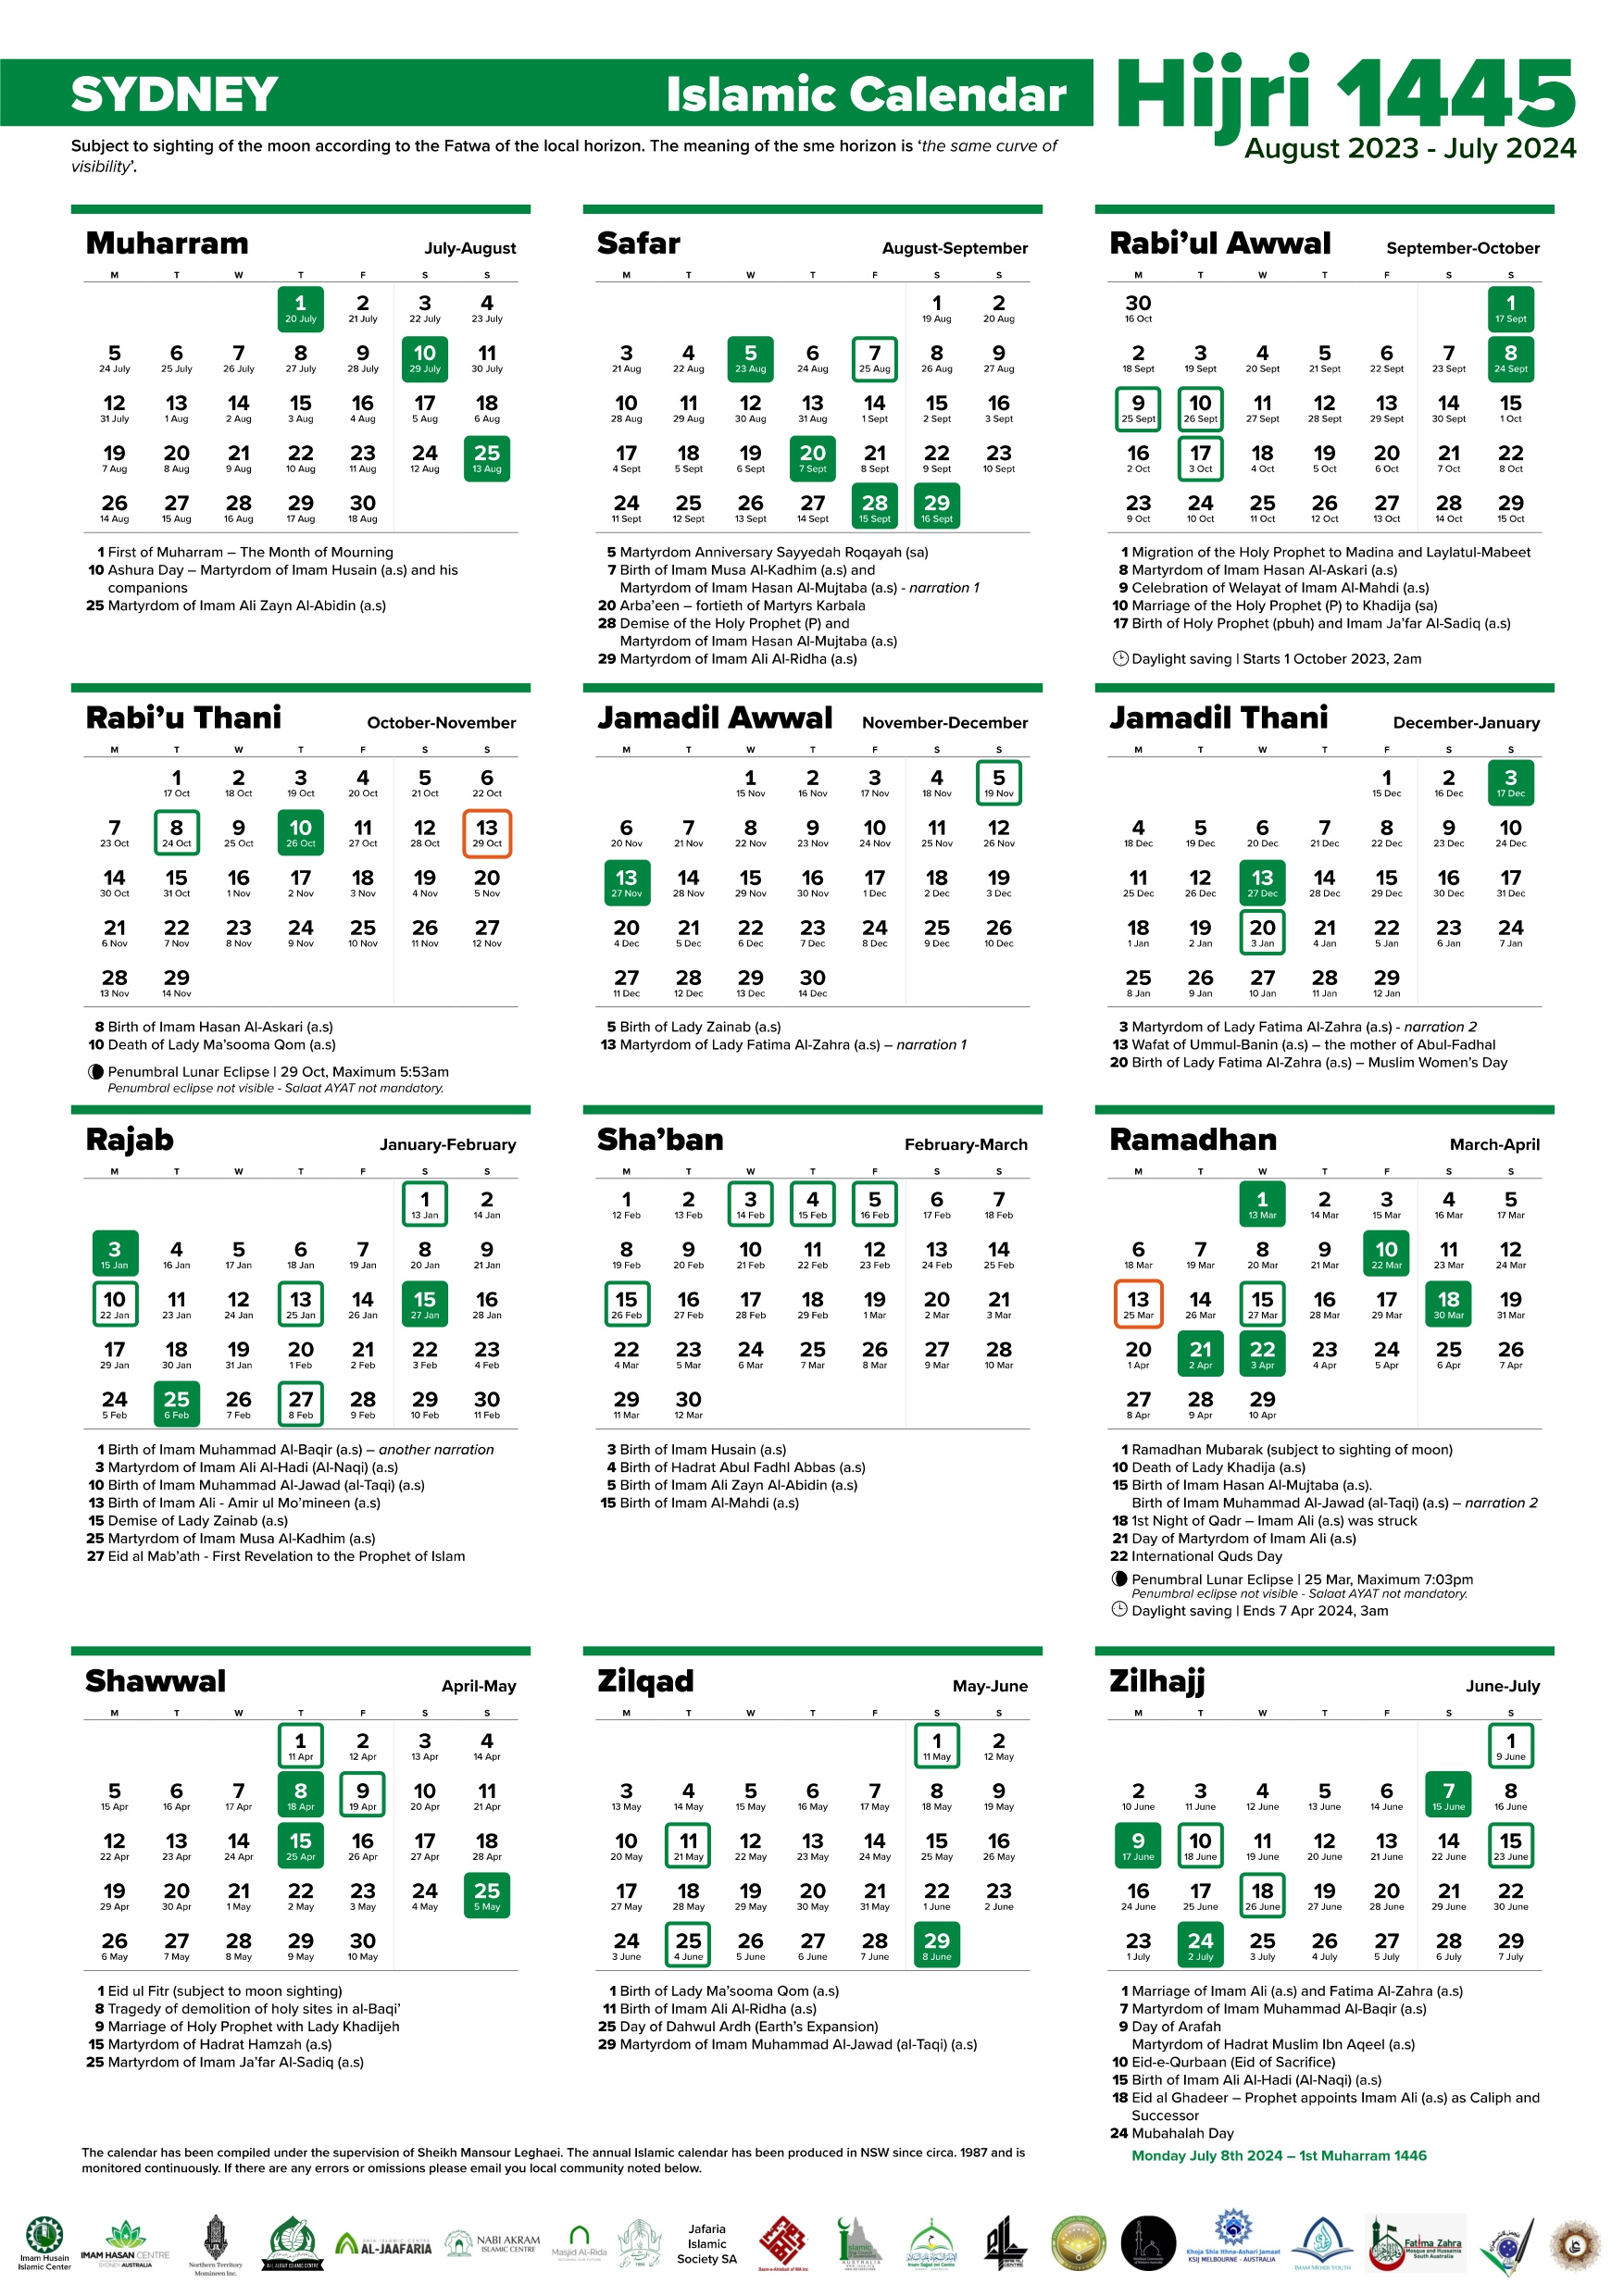 Annual Islamic Calendar 1445 Ah / 2023-2024 Ad – Imam Husain throughout 8 July 2024 in Islamic Calendar